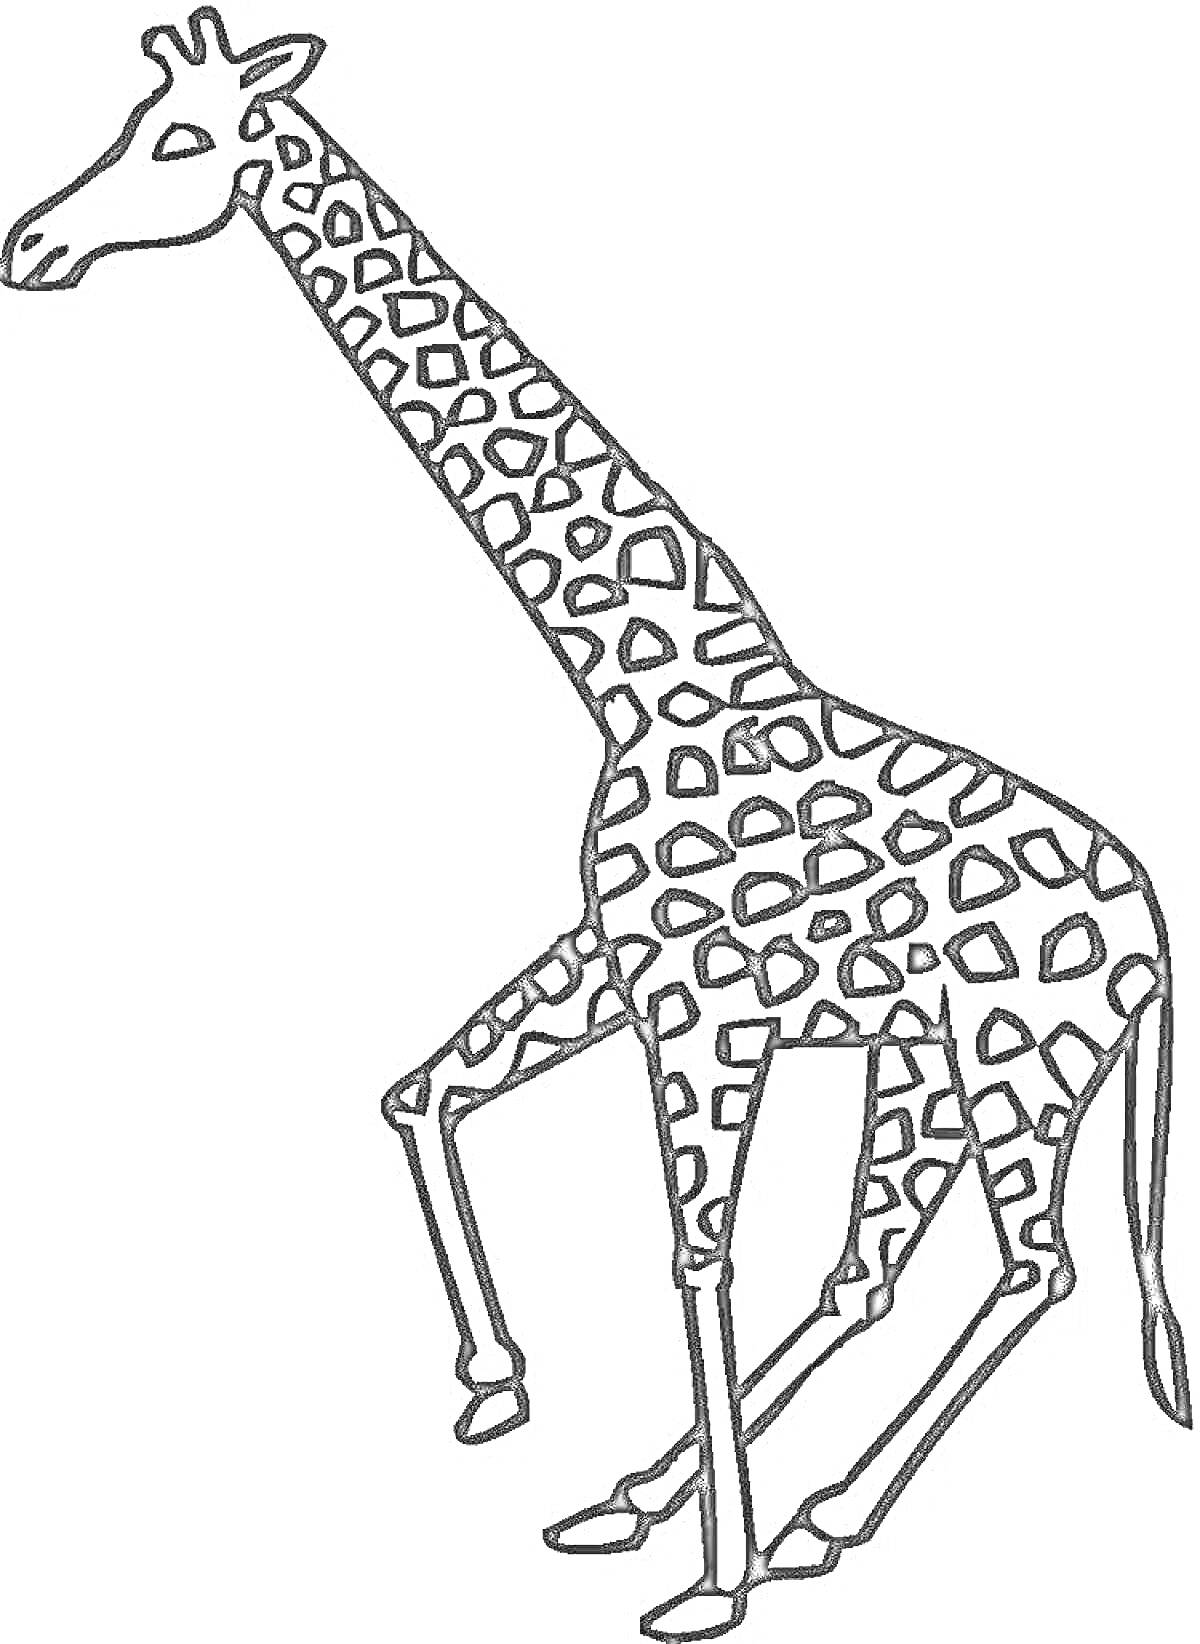 Раскраска Жираф для детей, стоящий на четырех ногах с пятнистым узором на теле